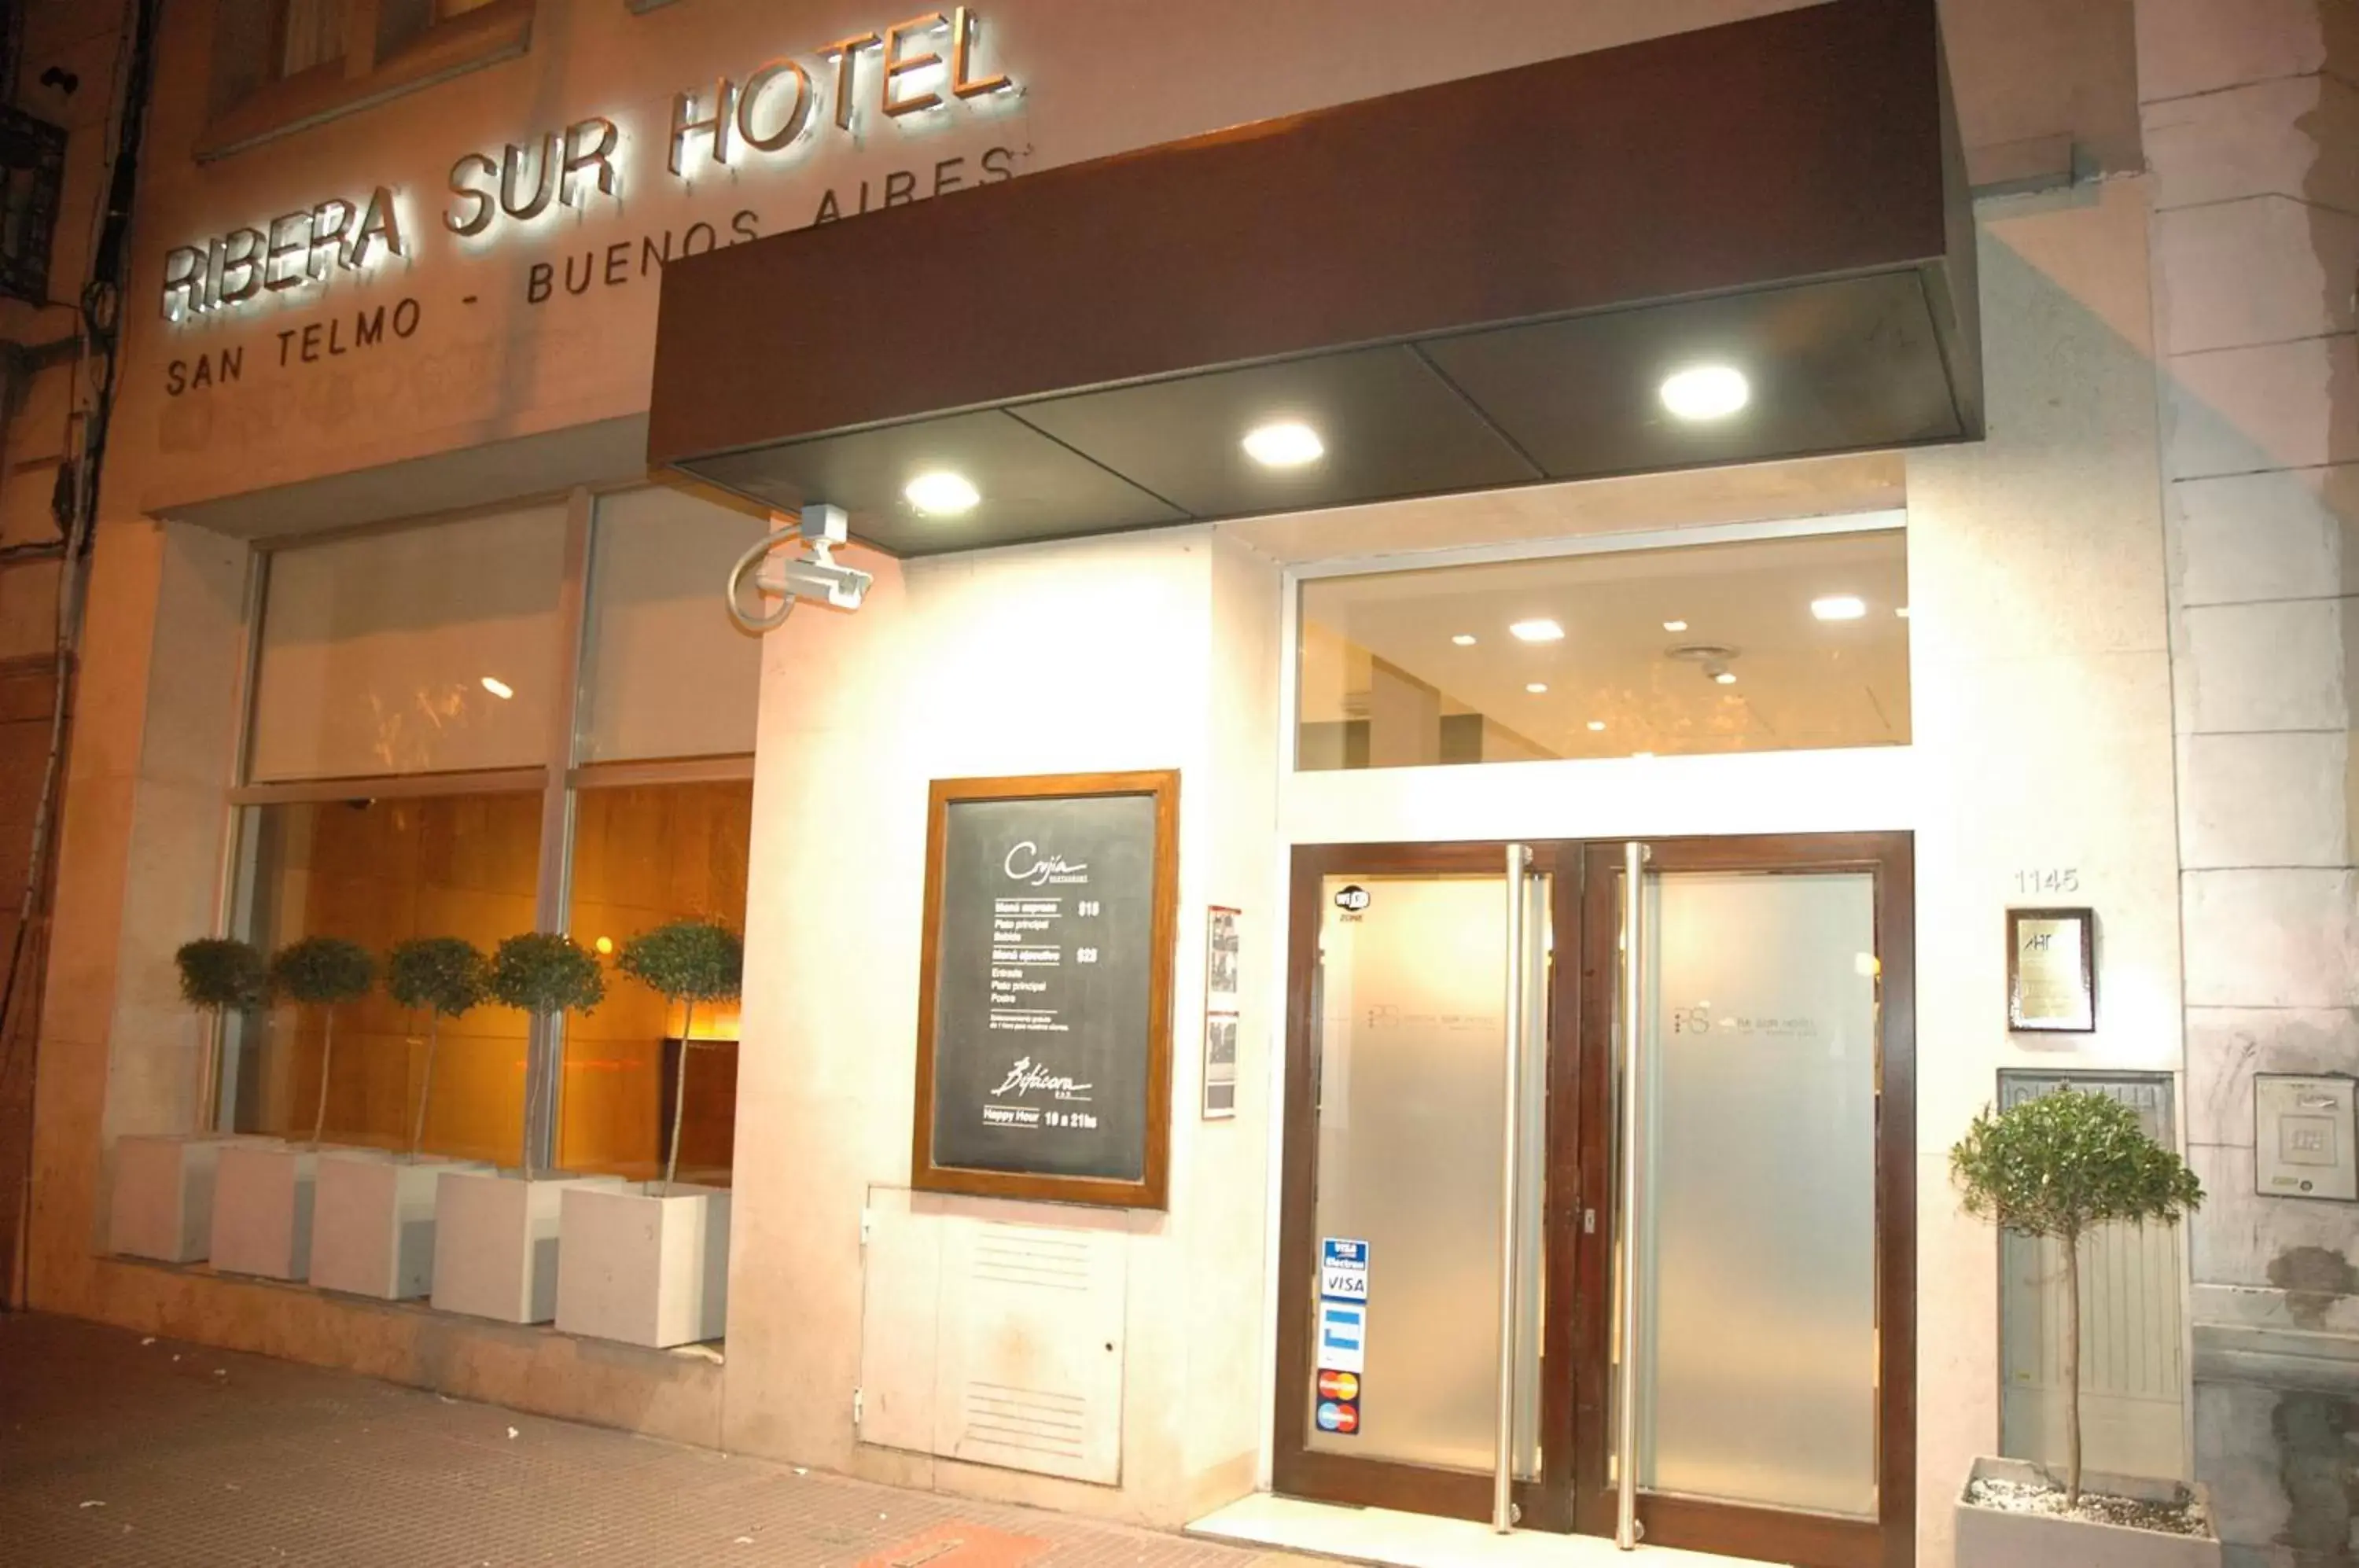 Facade/entrance in Ribera Sur Hotel